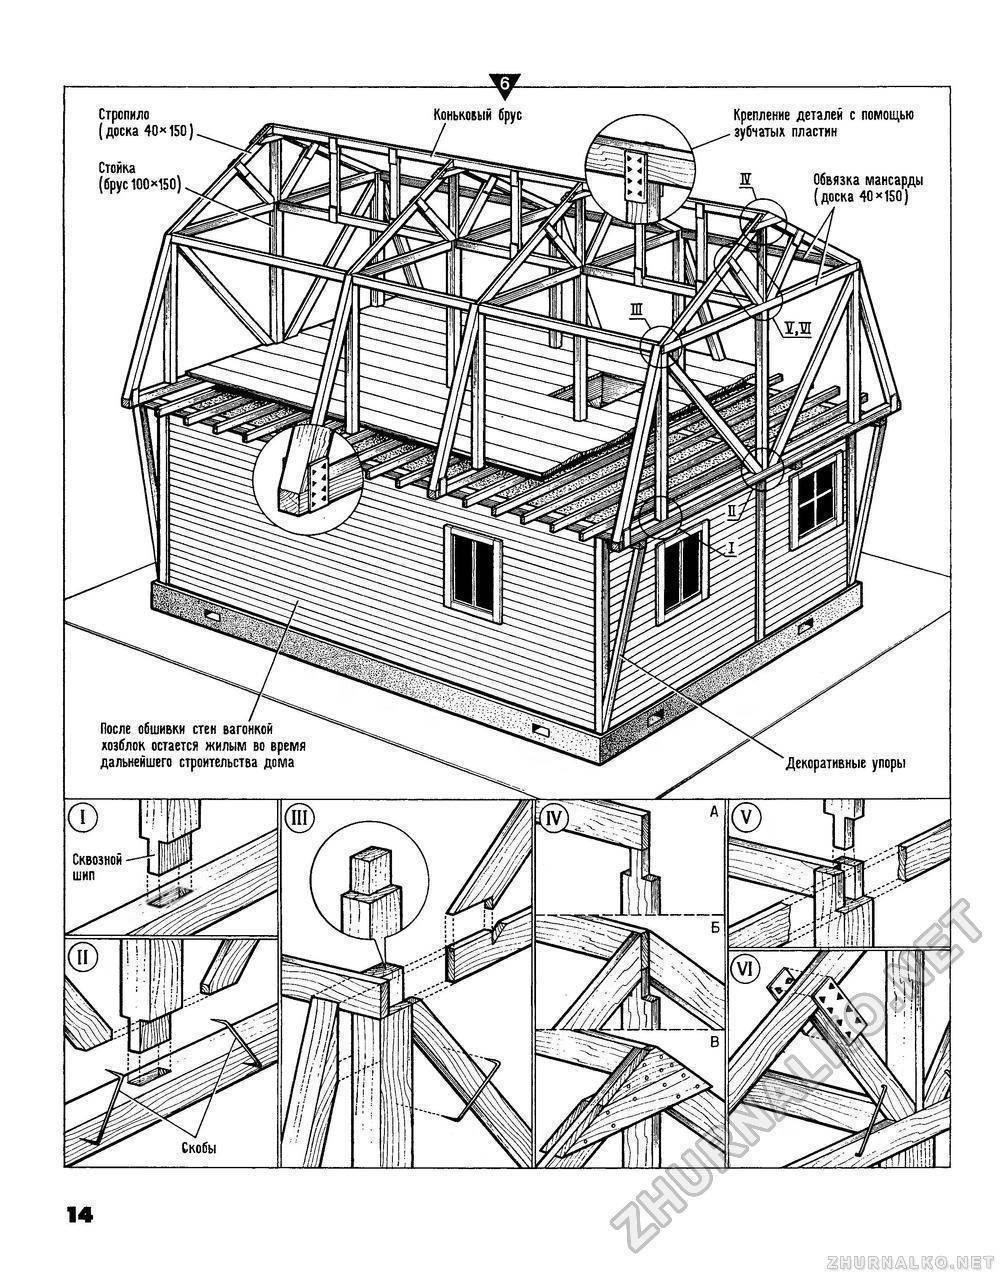 Что нужно для того, чтобы построить качественную мансардную крышу своими руками?